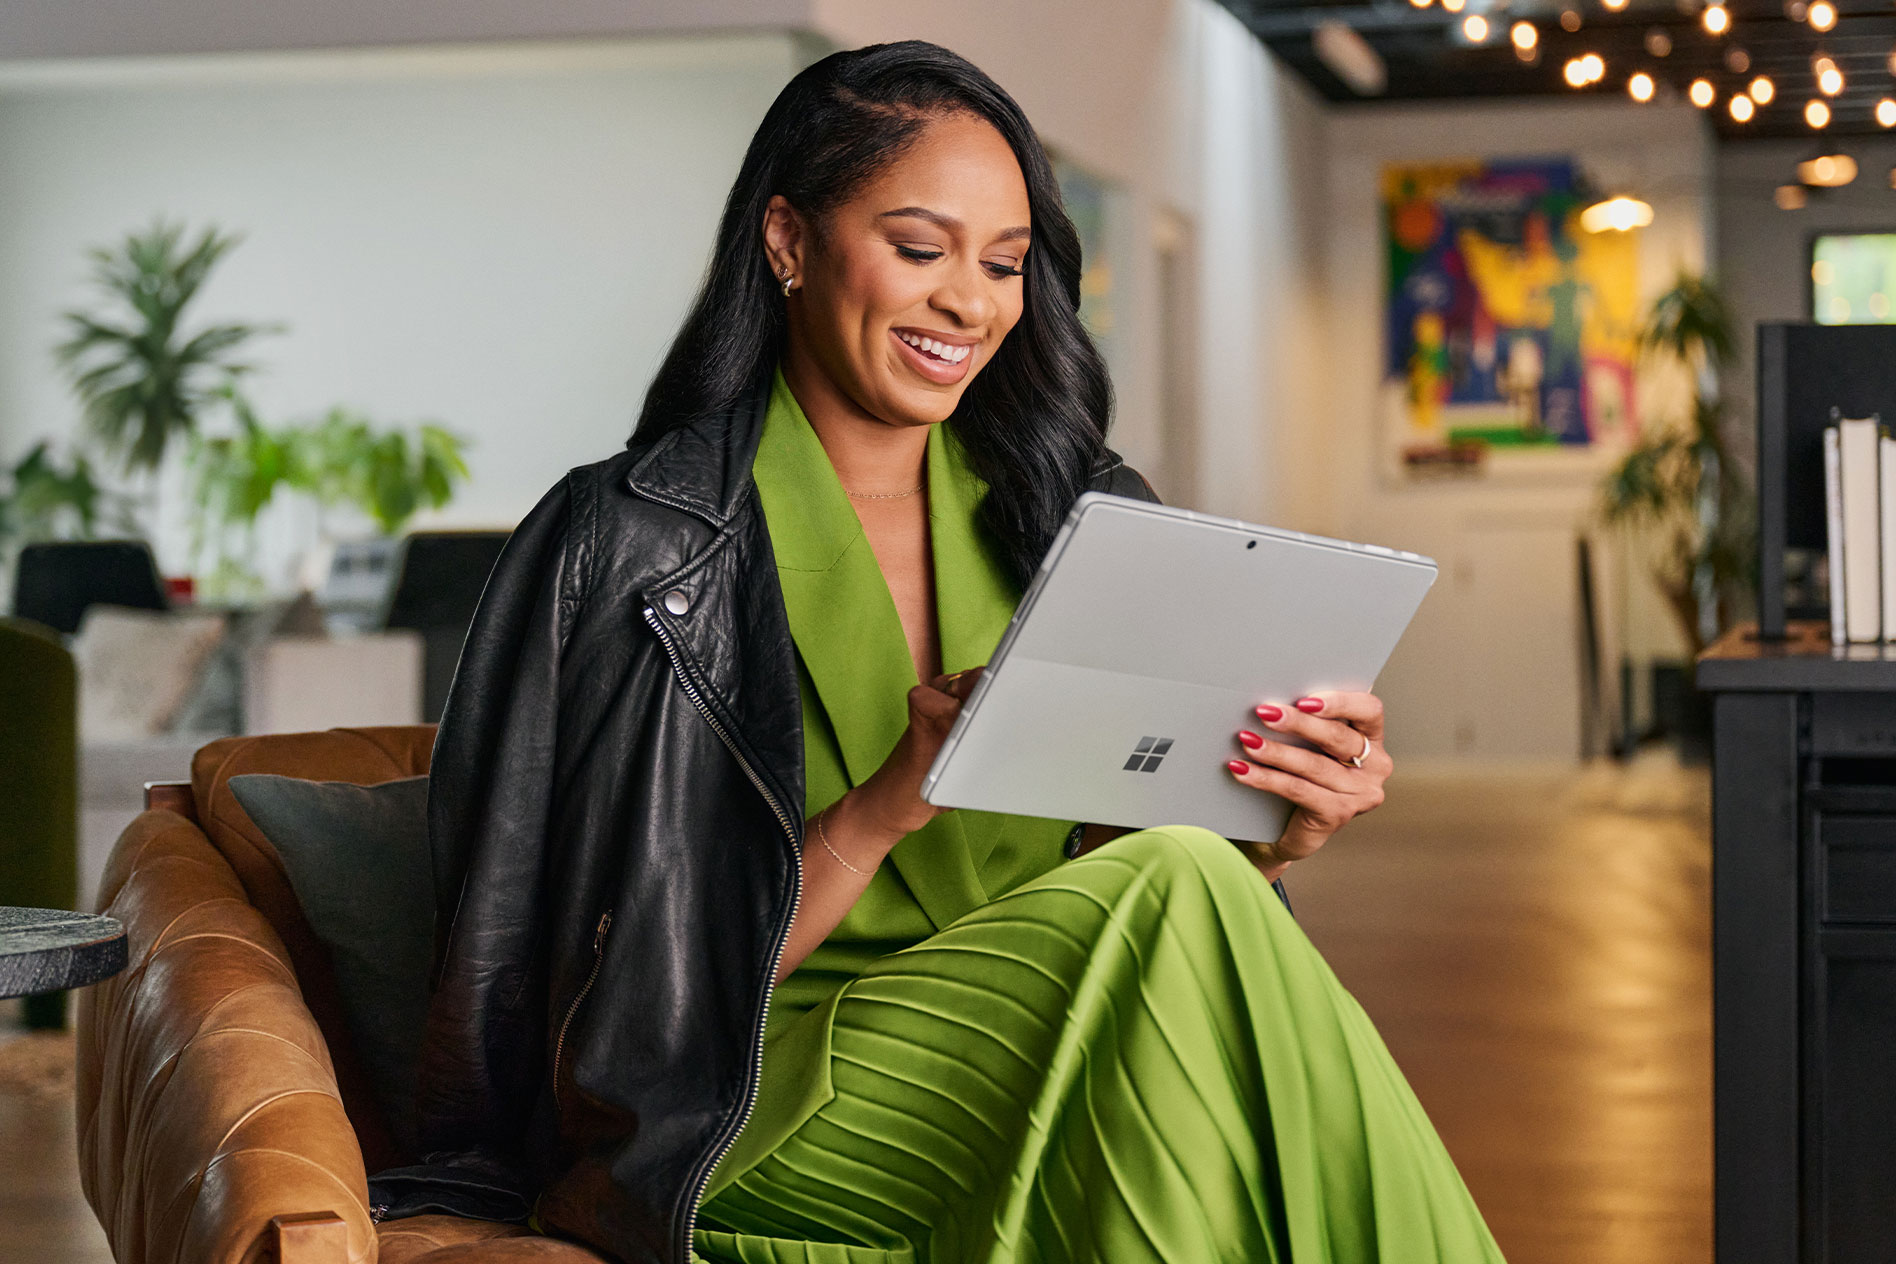 ผู้หญิงสวมชุดเดรสยาวสีเขียวและแจ็กเก็ตหนังสีดำคนหนึ่งนั่งอยู่บนเก้าอี้และกำลังโต้ตอบกับ Surface Pro 9 ของตนในโหมดแท็บเล็ต